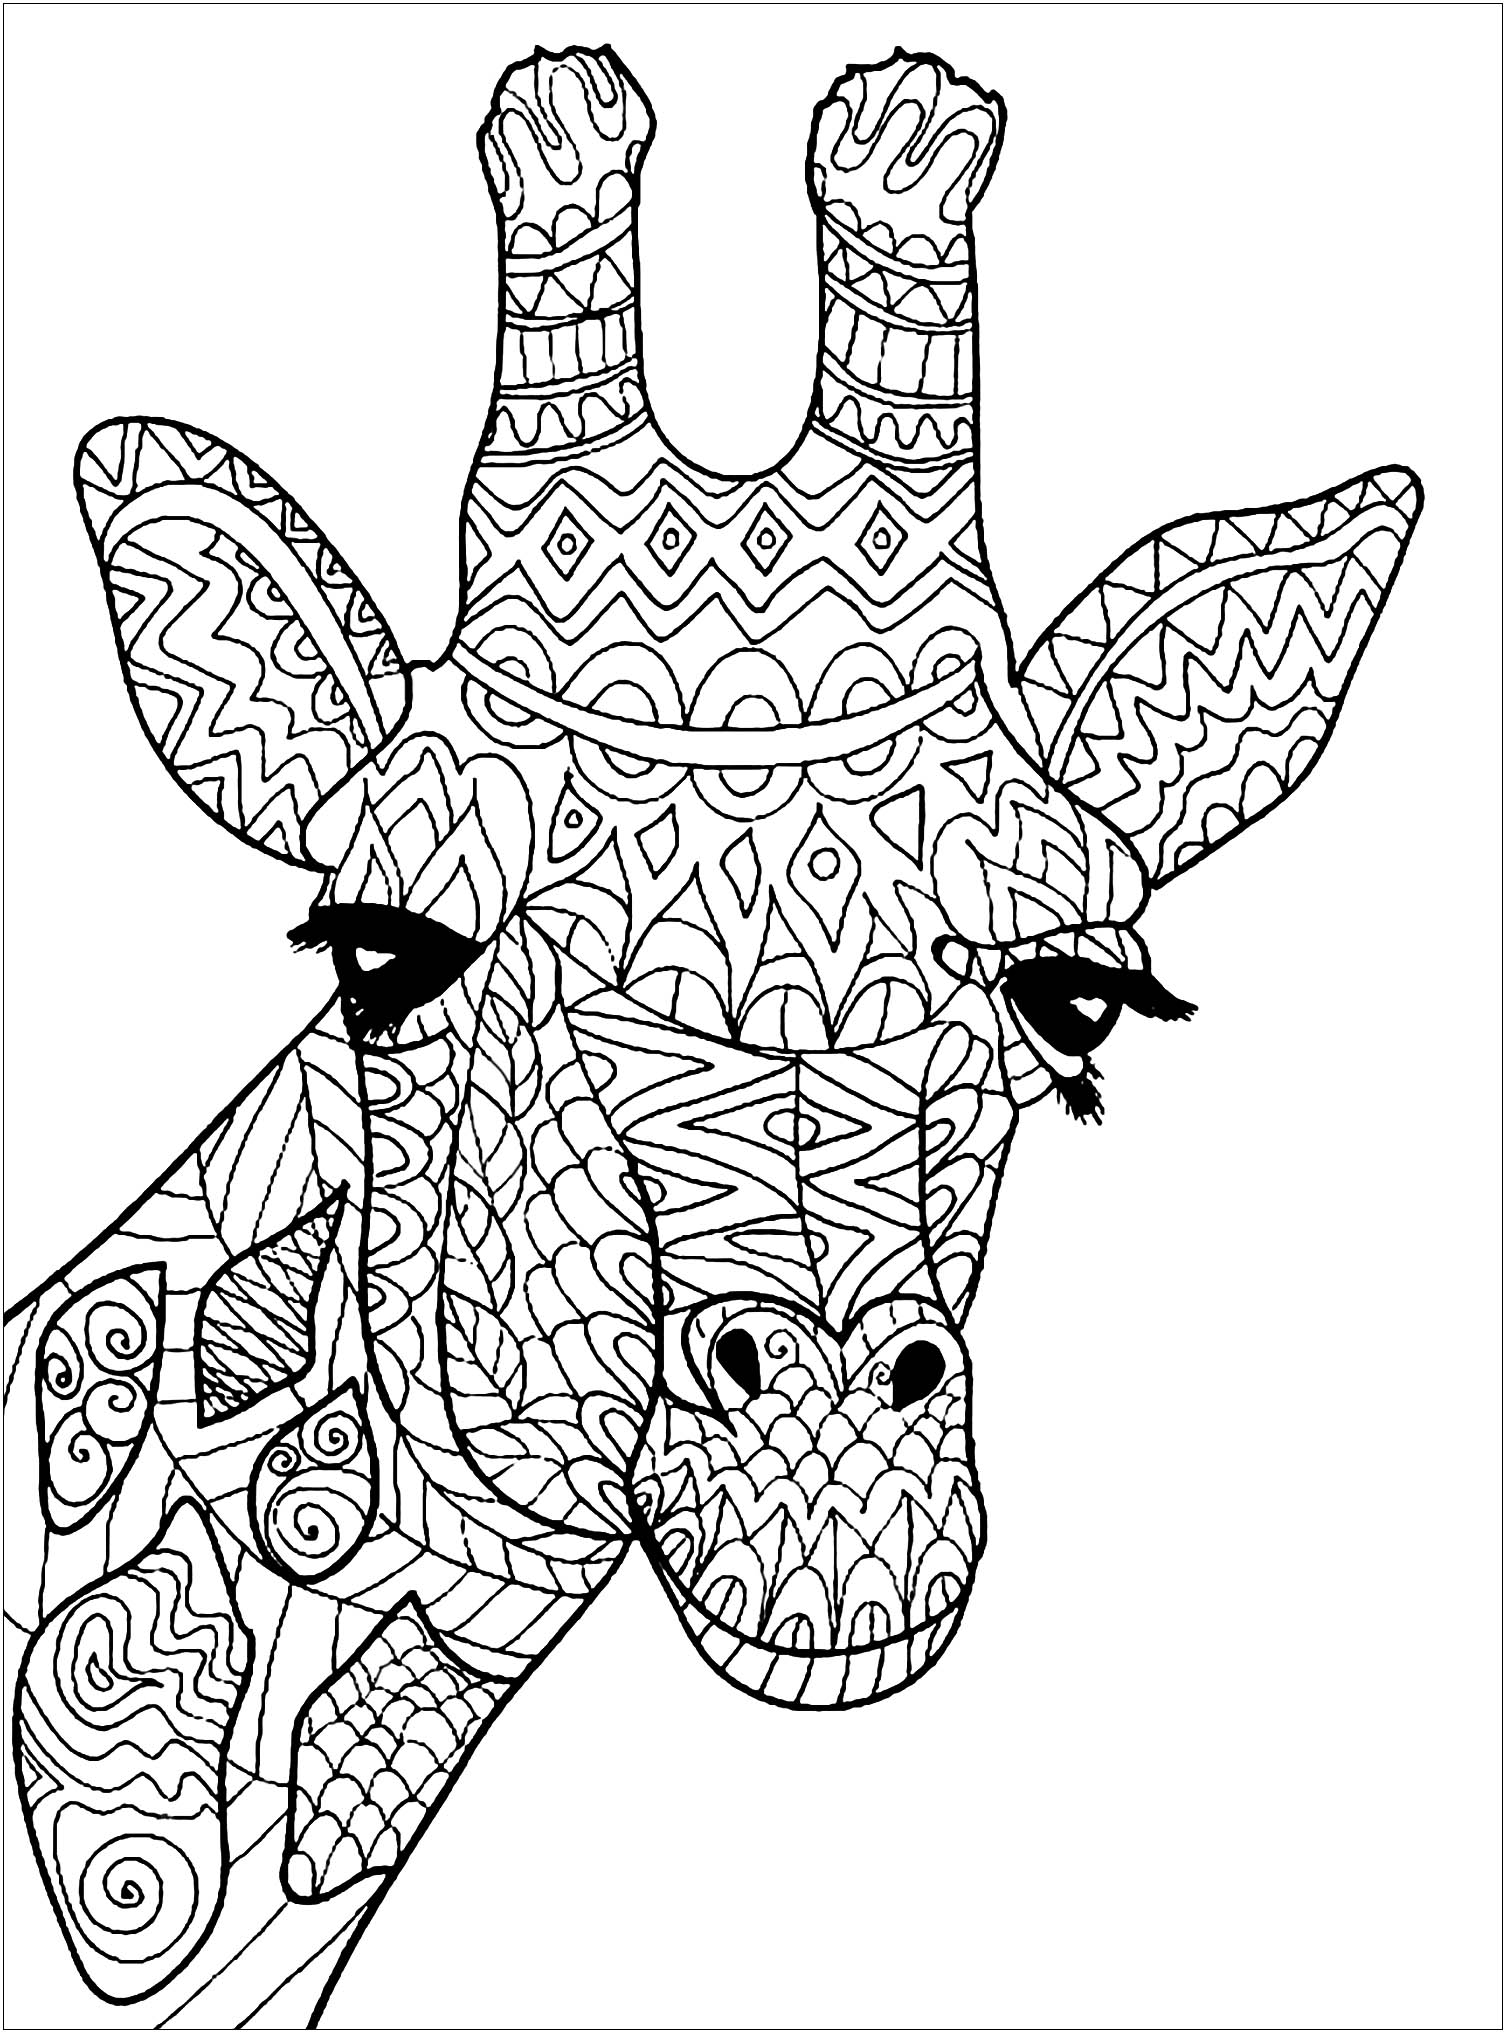 Tête de girafe à colorier - Girafes - Coloriages difficiles pour adultes